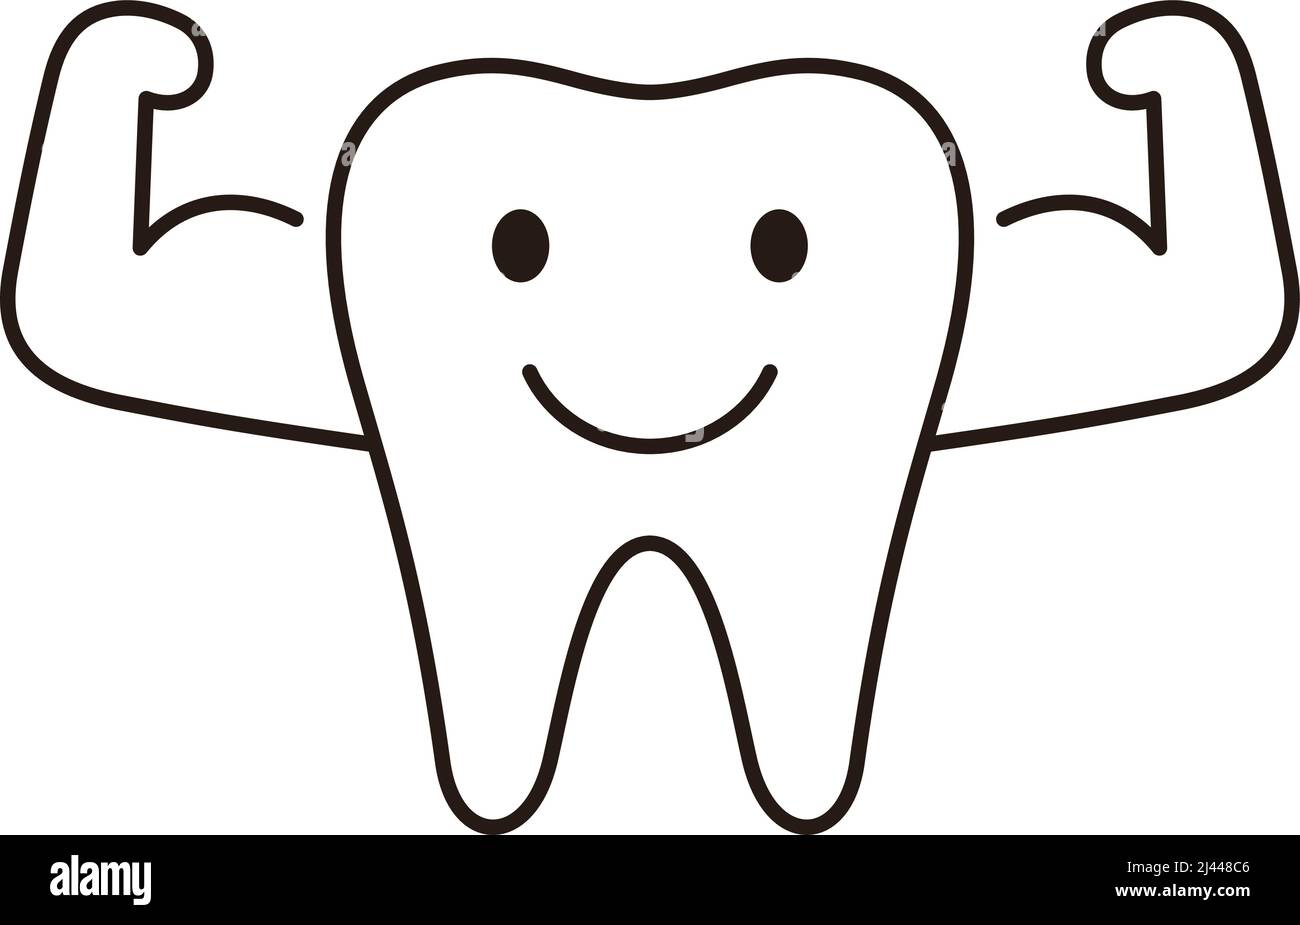 Zahn-Symbol, Zahn zeigt die Leistung, Illustration Vektor. Zahnmedizinisches Konzept. Stock Vektor